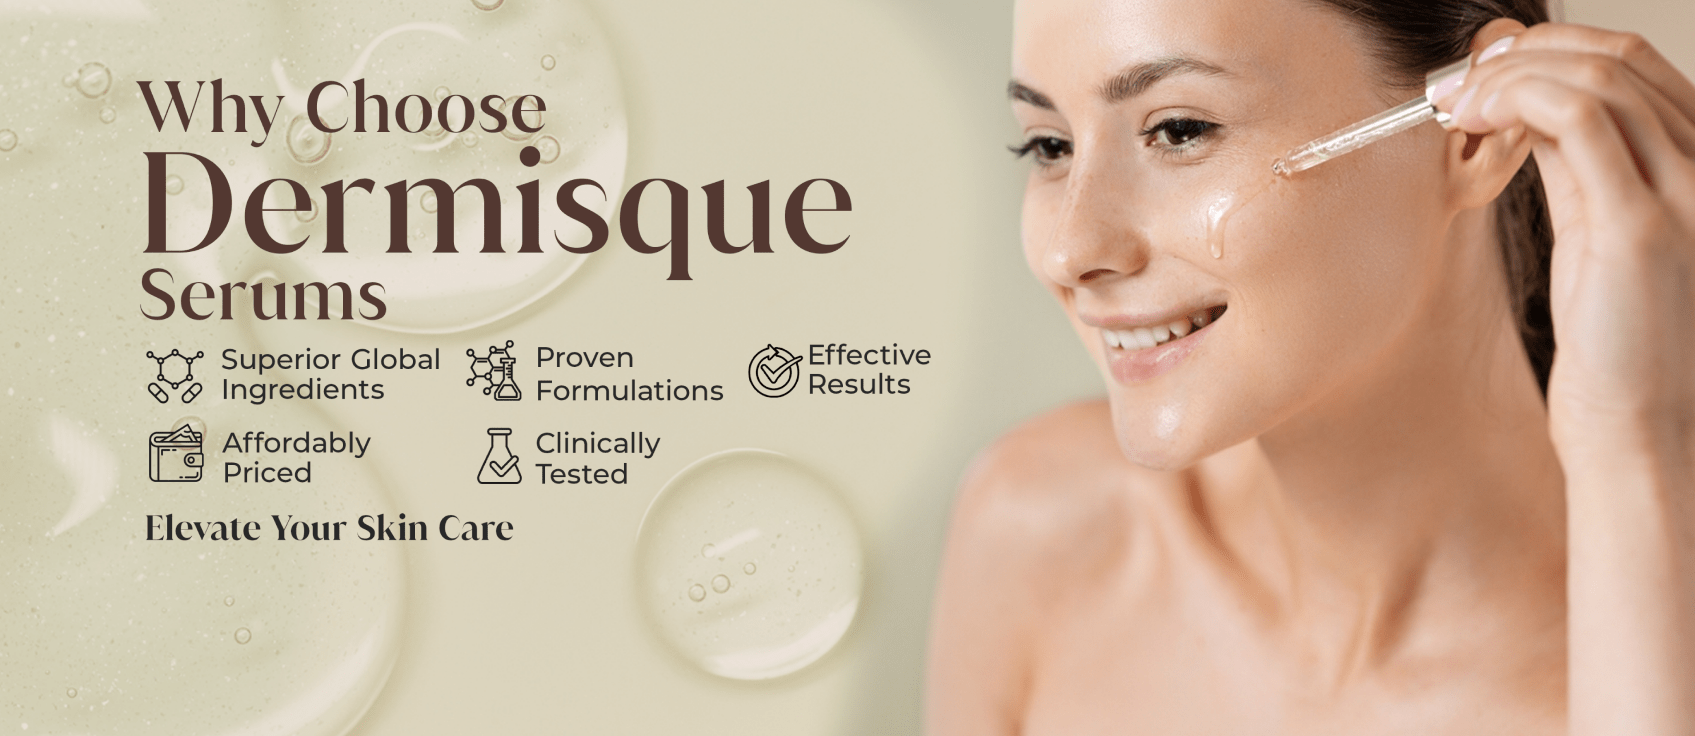 Dermisque Skincare